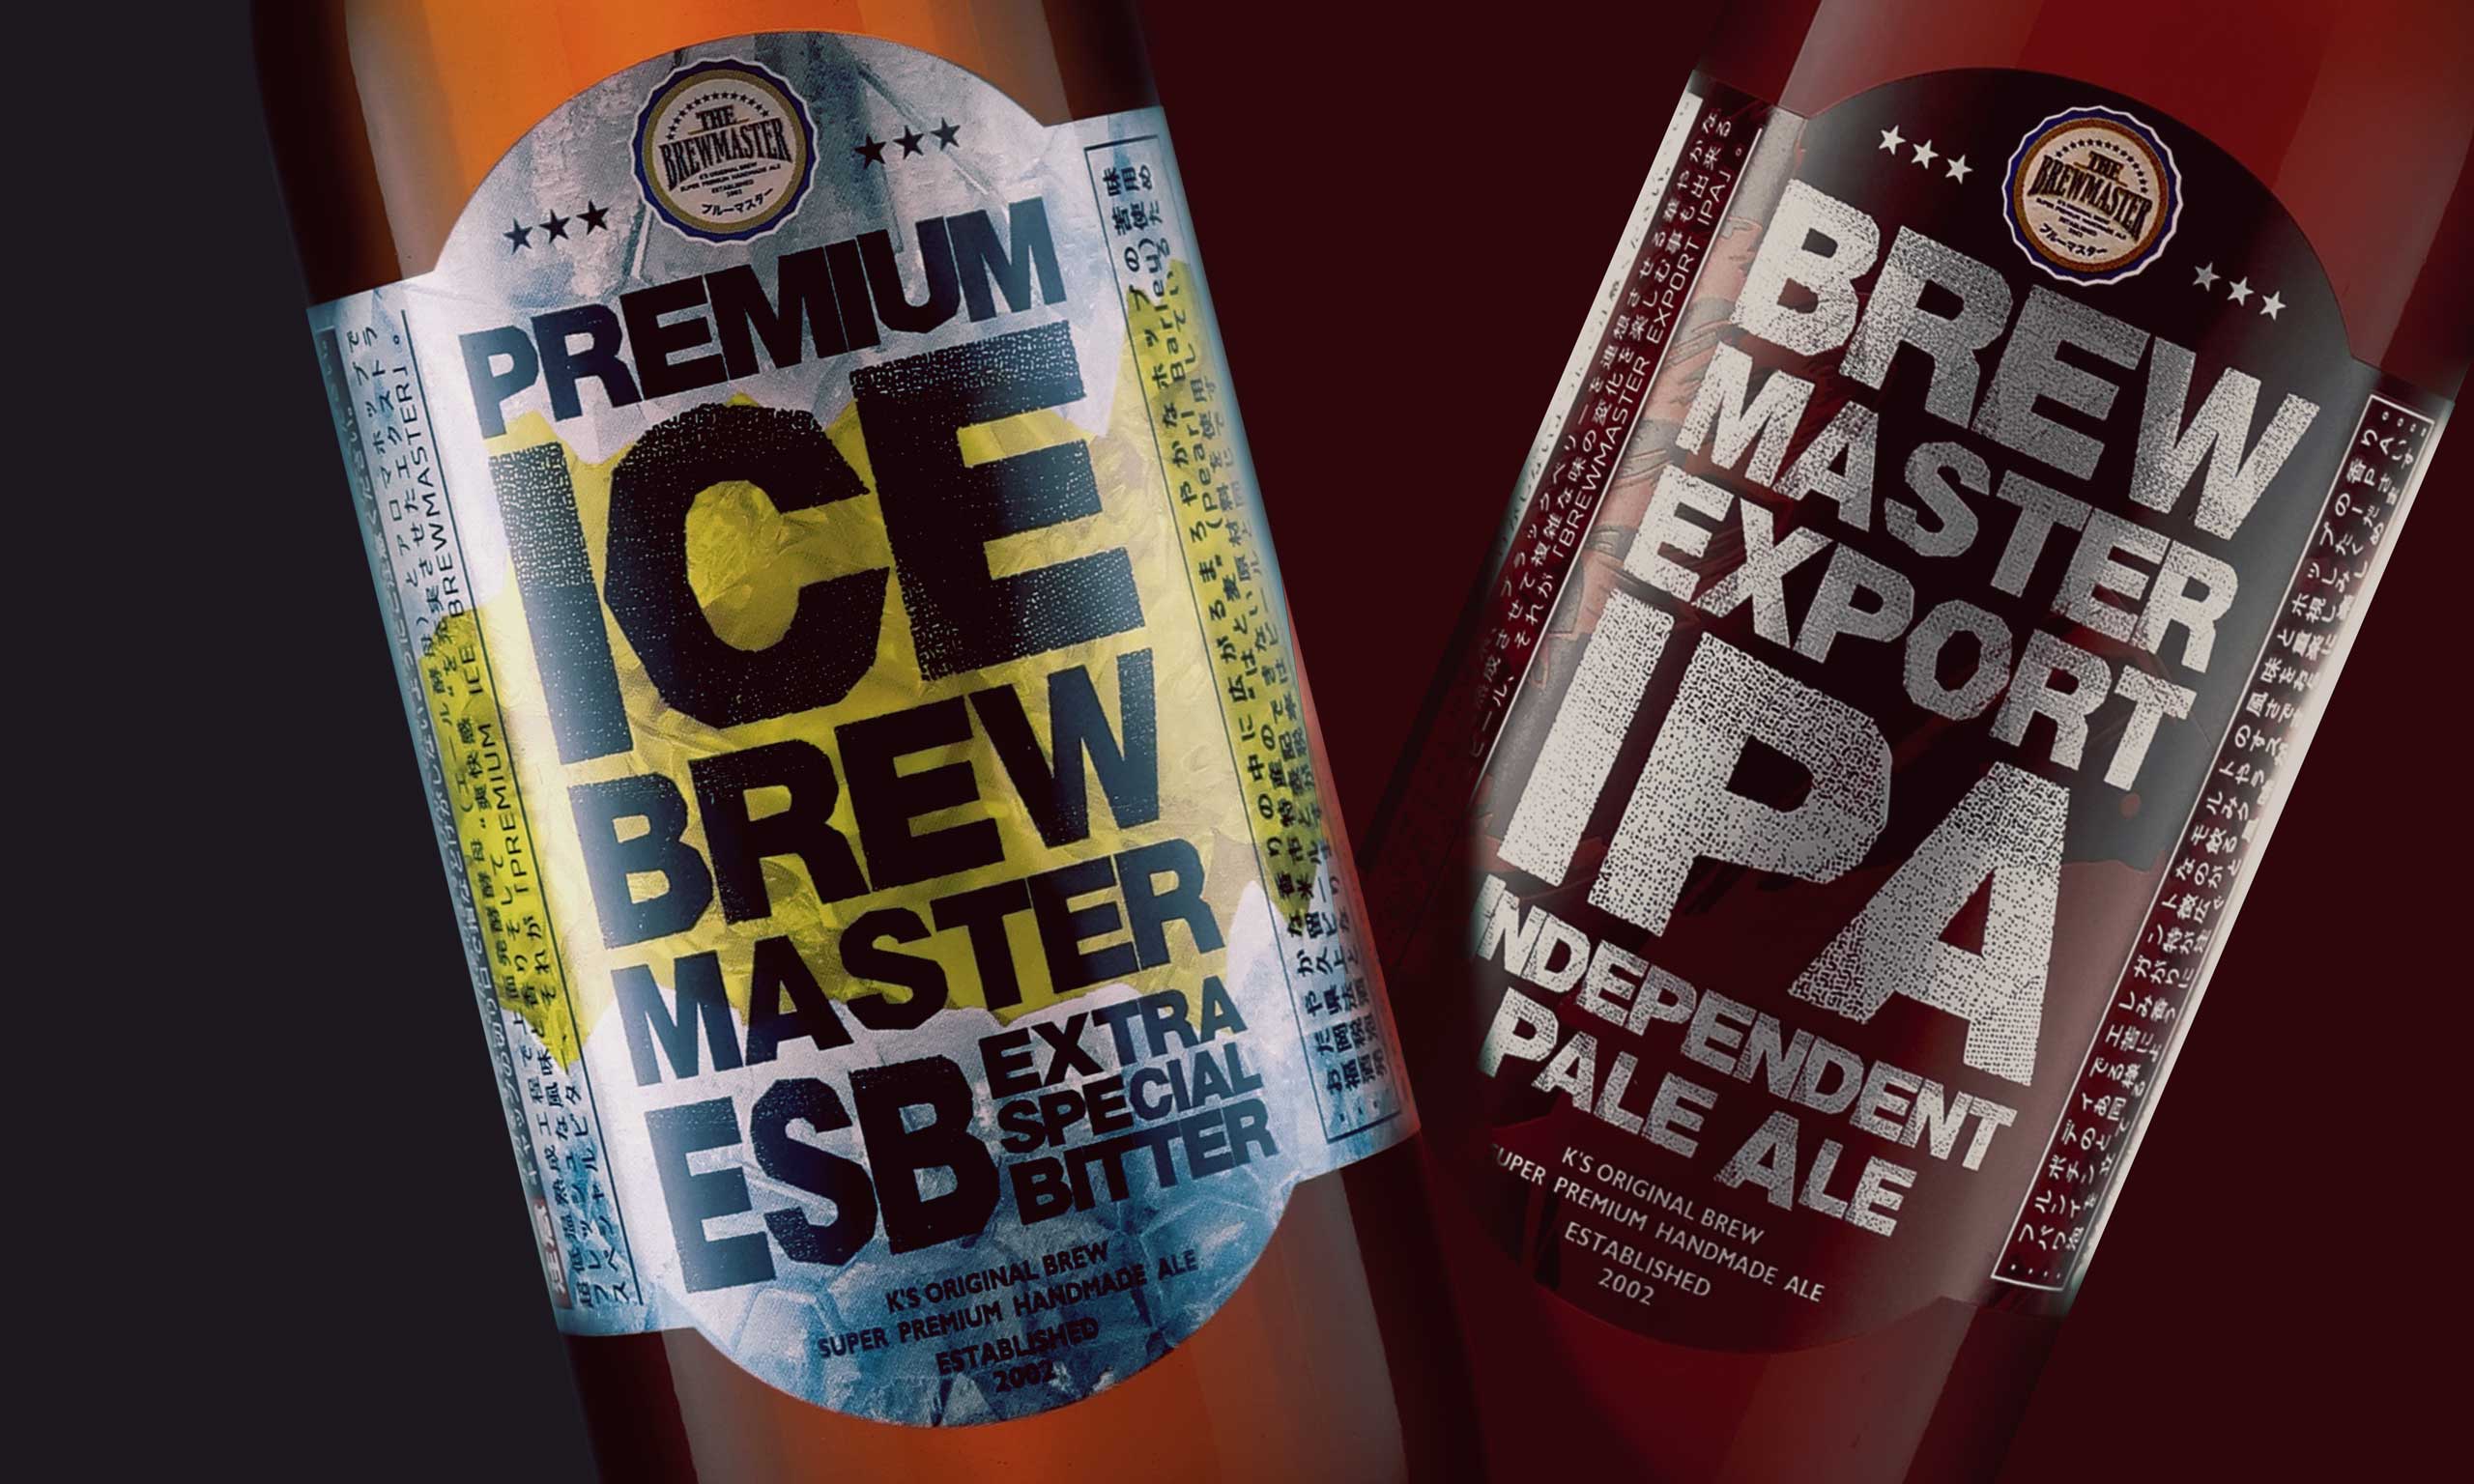 ブルーマスタークラフトビール２種類のボトルに貼られたラベルデザインが大きく写った写真